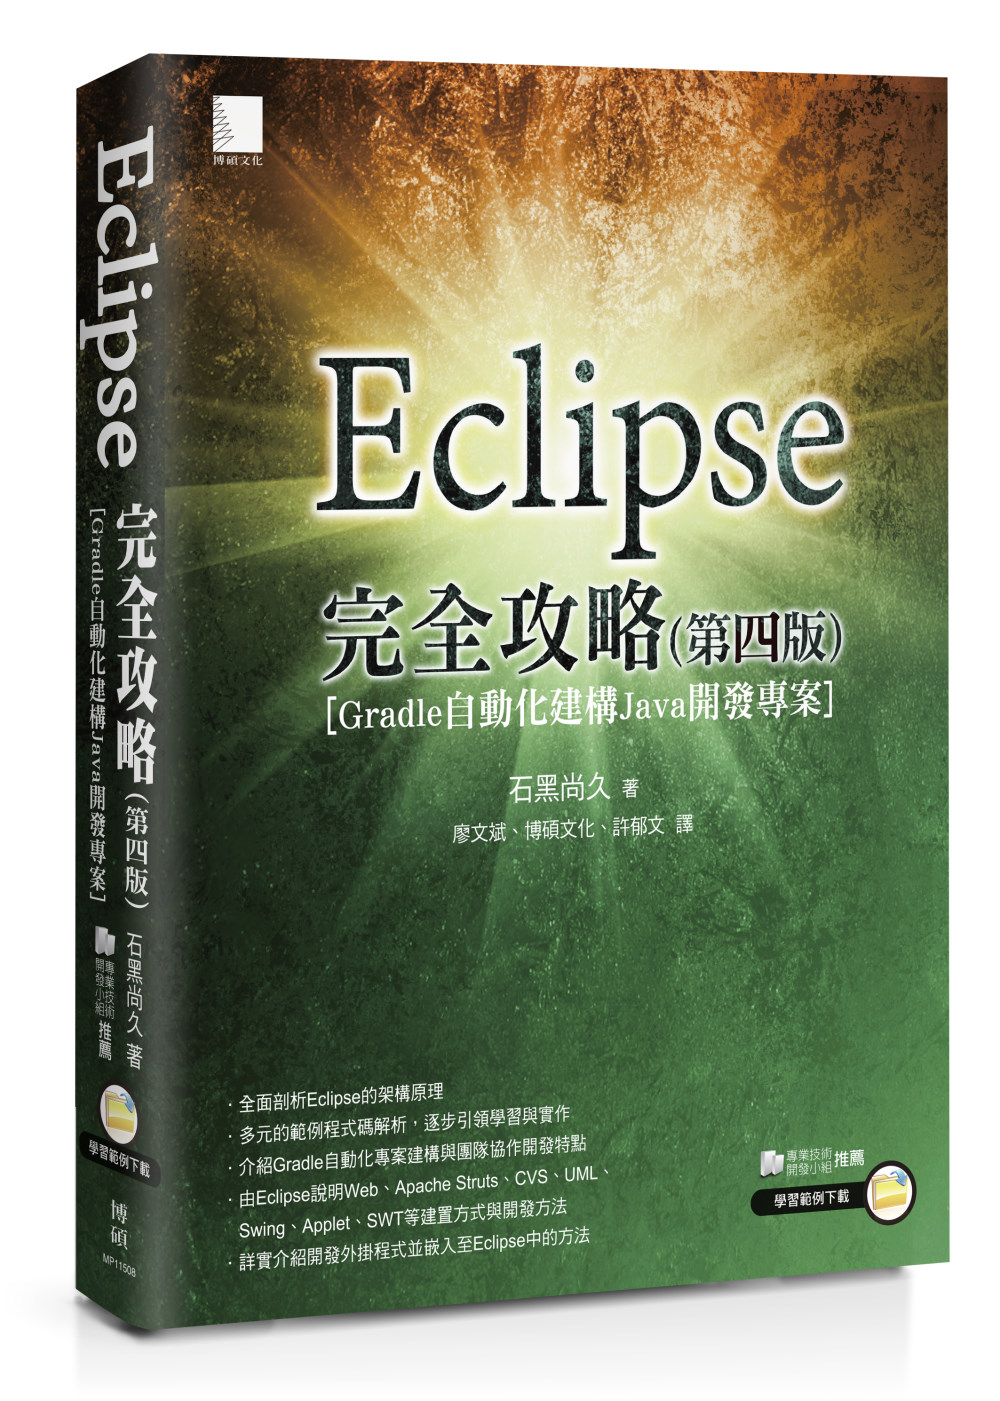 Eclipse完全攻略(第四版)[Gradle自動化建構Ja...